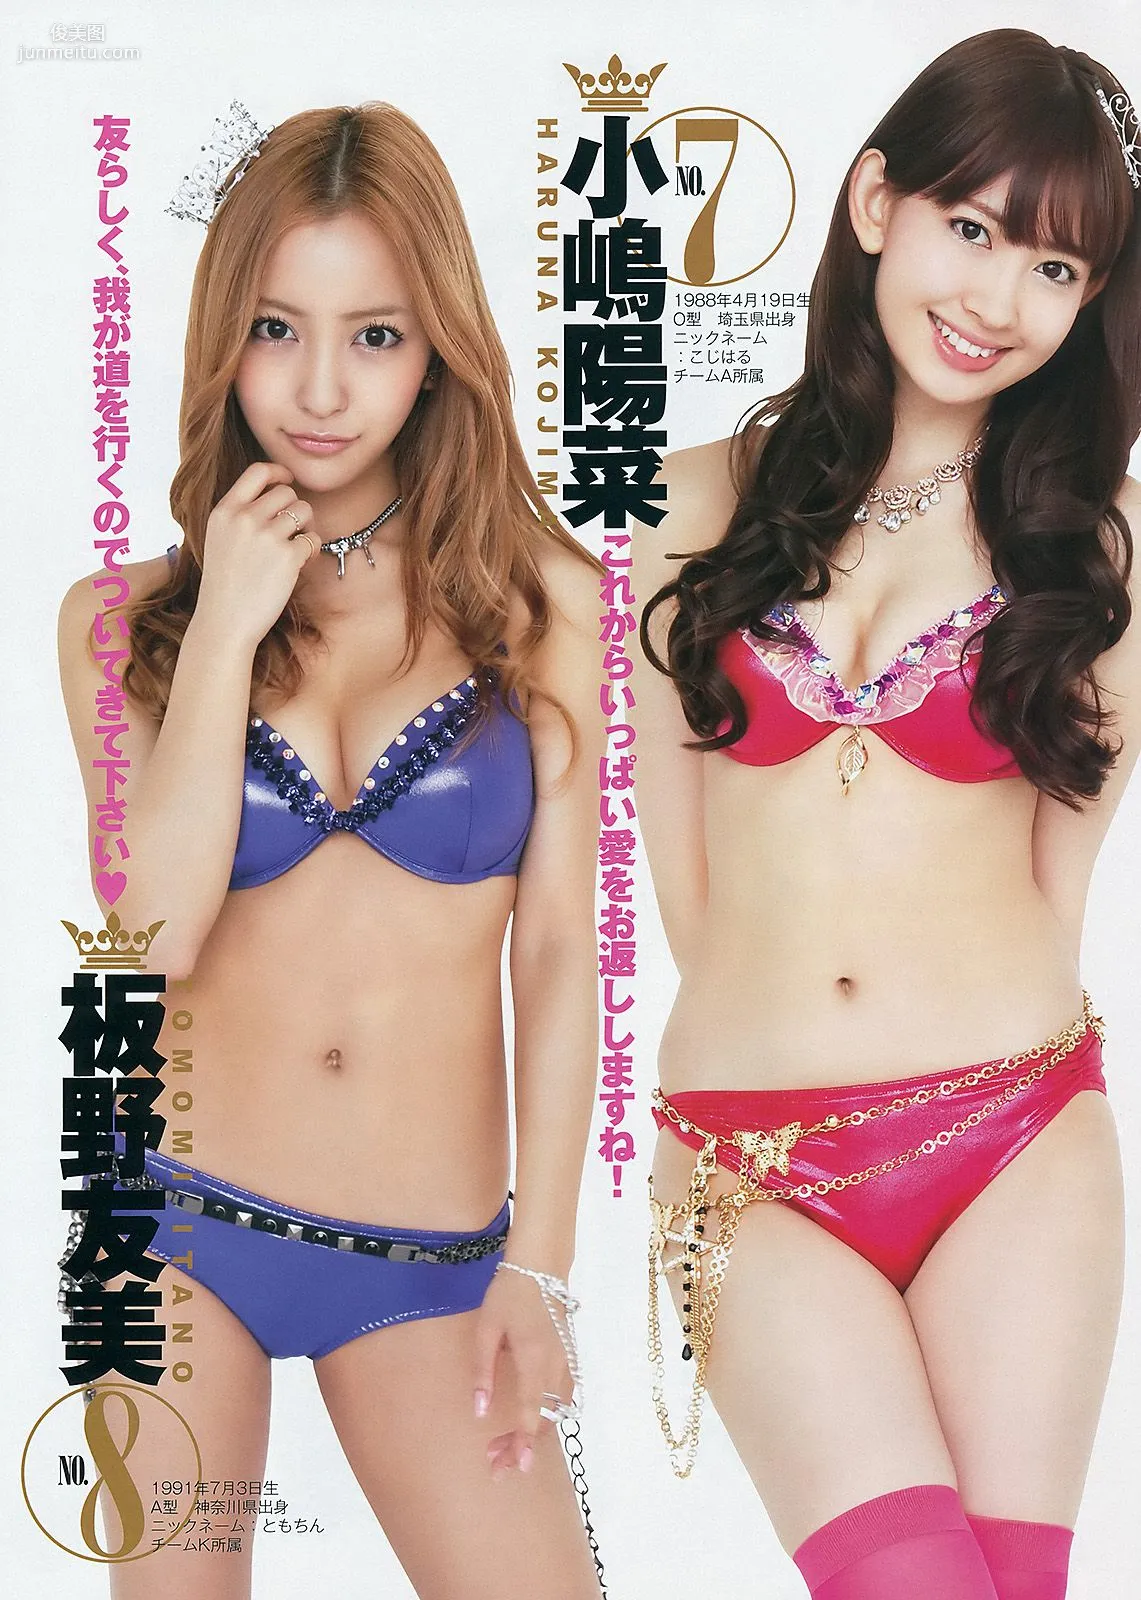 篠田麻里子 伊藤梨沙子 橋本愛 AKB48 [Weekly Young Jump] 2012年No.37-38写真杂志19